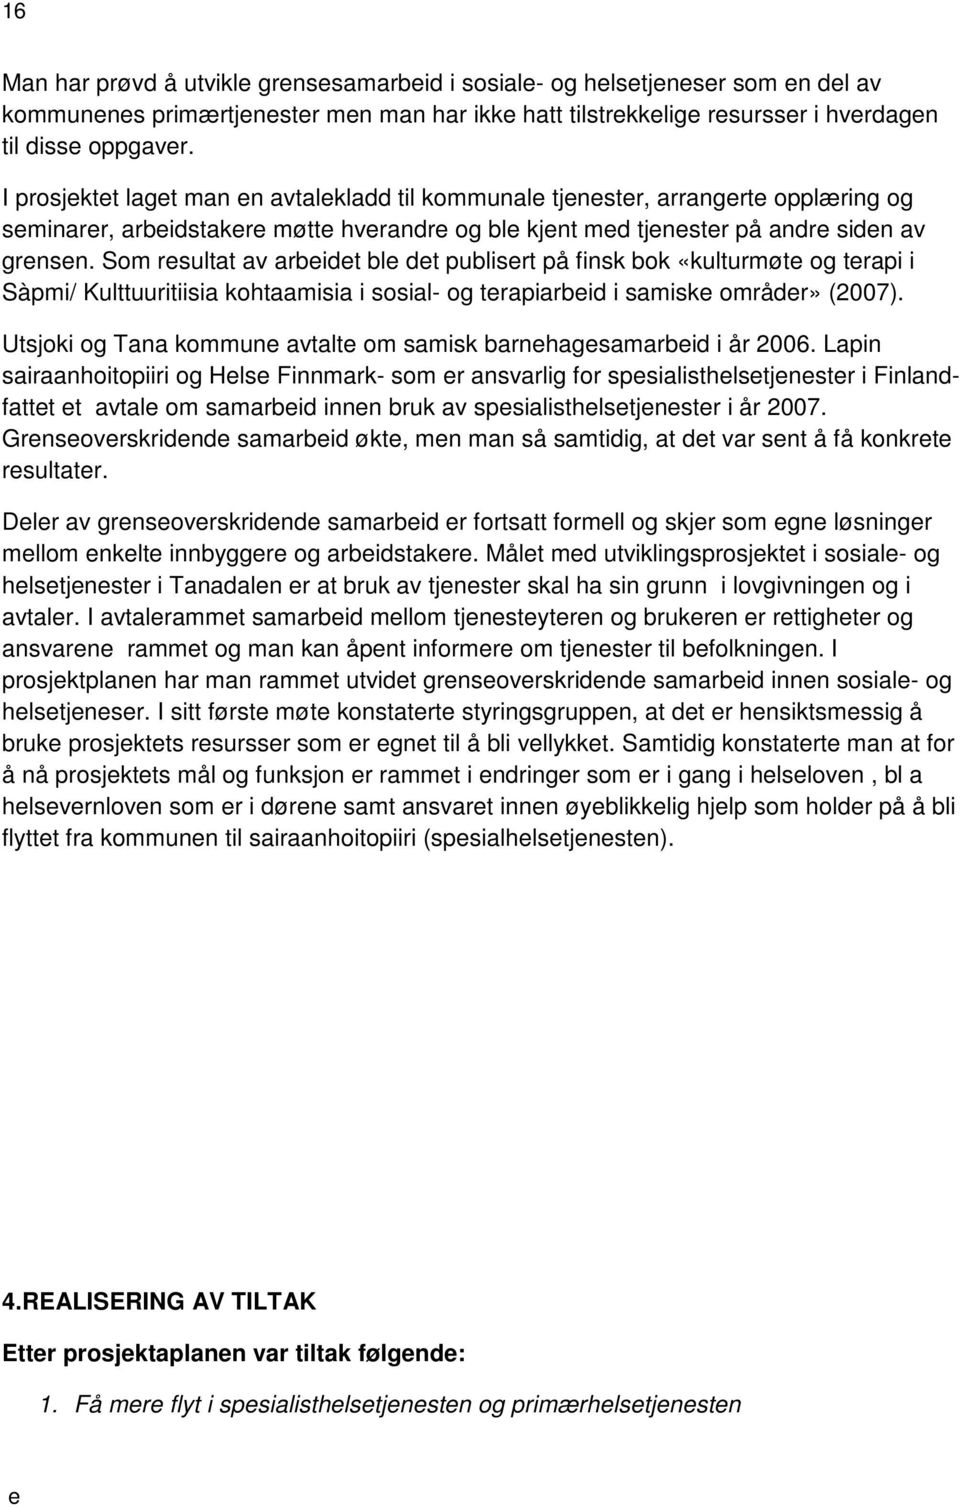 Som rsultat av arbidt bl dt publisrt på finsk bok «kulturmøt og trapi i Sàpmi/ Kulttuuritiisia kohtaamisia i sosial- og trapiarbid i samisk områdr» (2007).